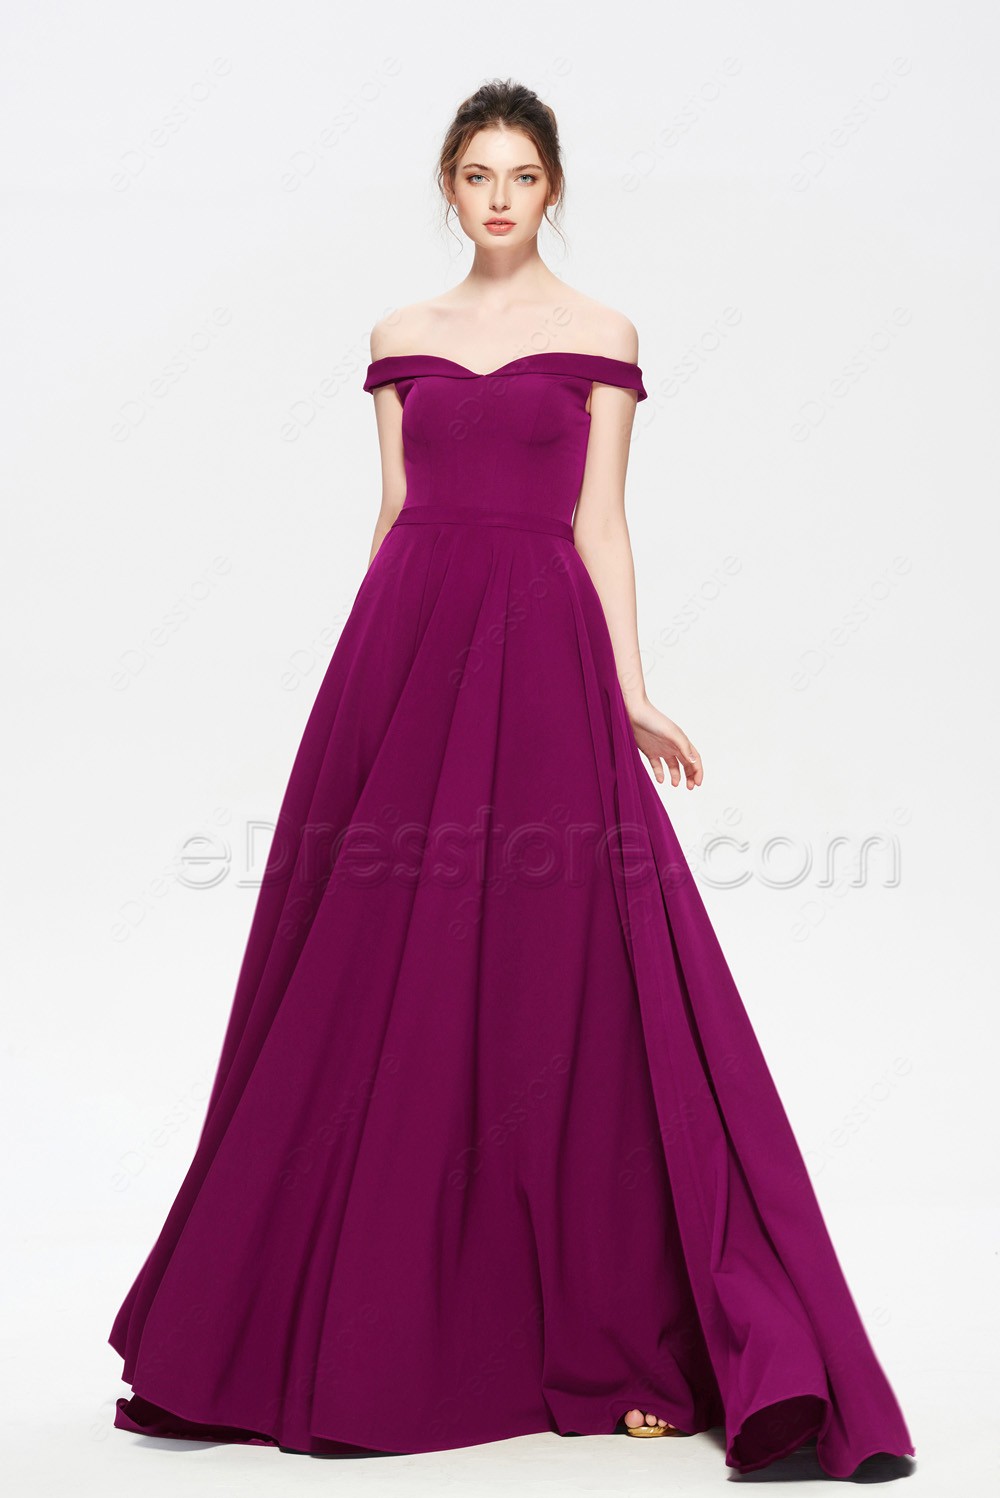 Magenta Formal Dress Online Store, UP ...